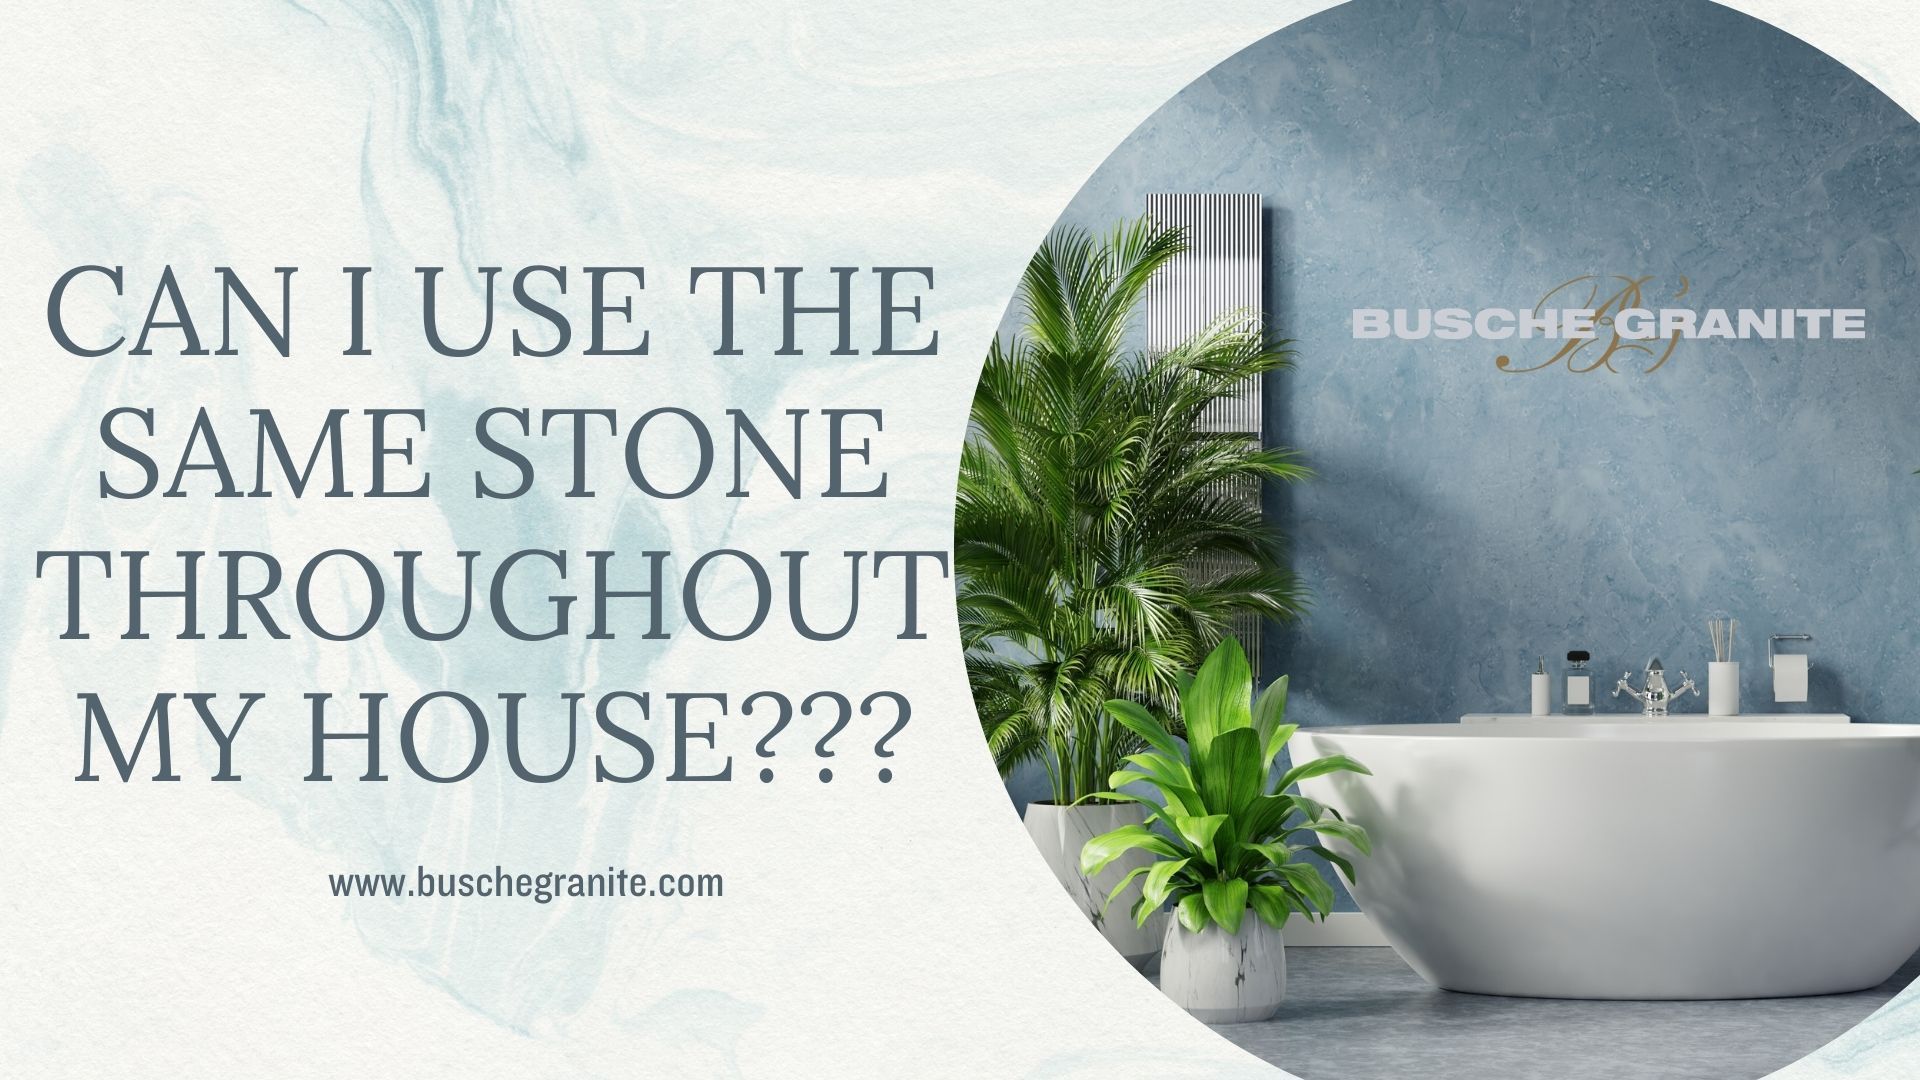 busche granite stone for your home